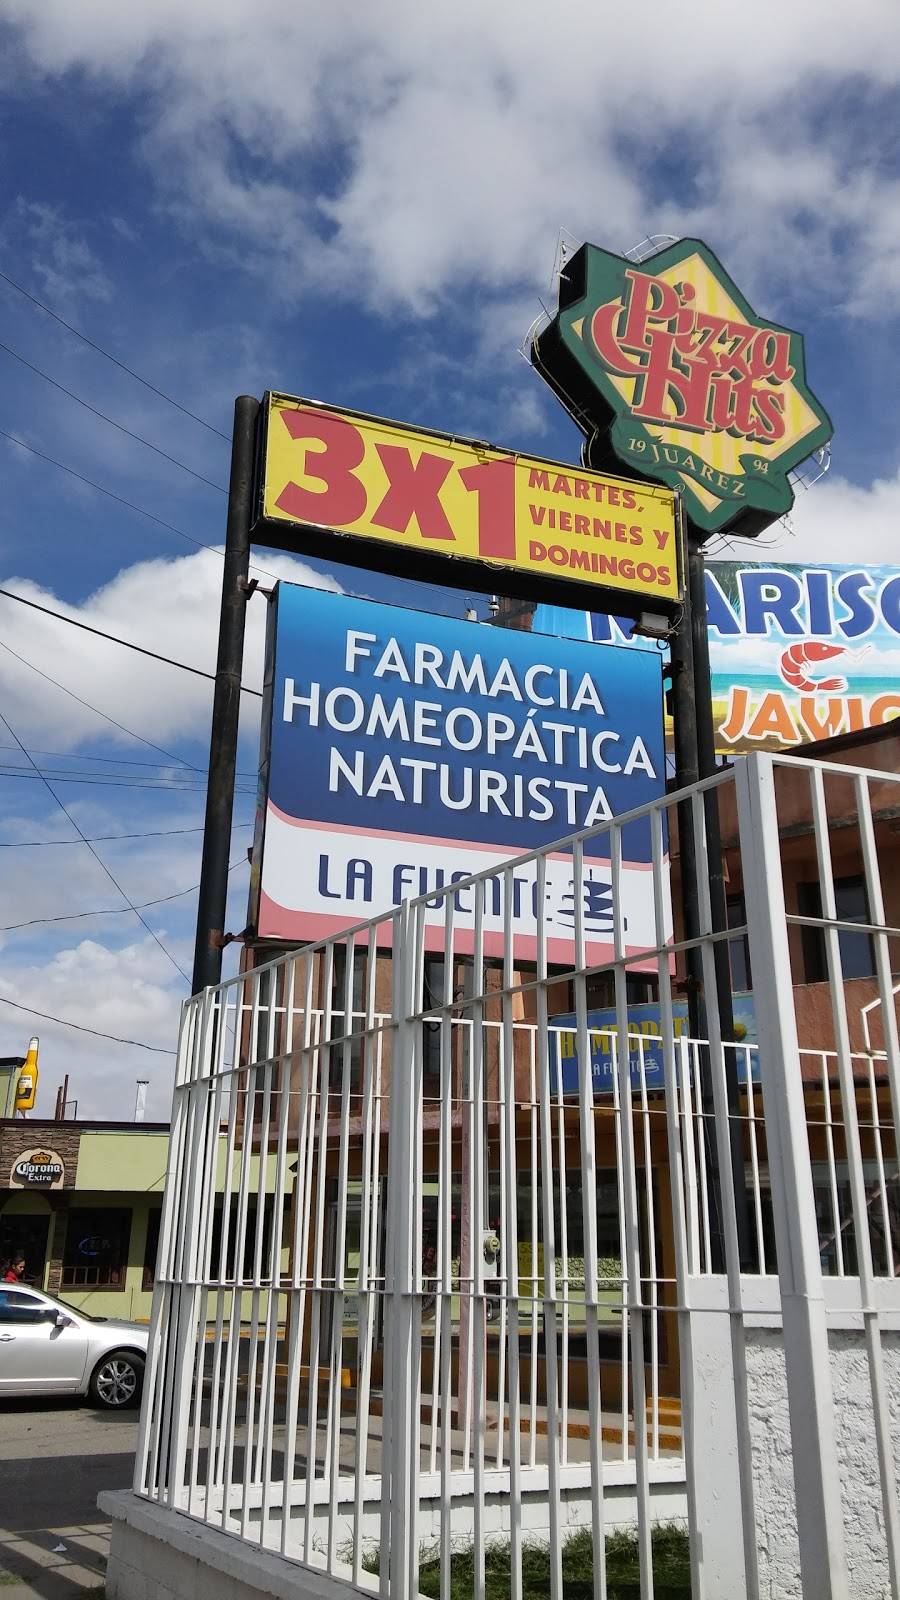 Farmacia Homeopática "La Fuente" | 172, San Lorenzo, Era de San Lorenzo, 32320 Cd Juárez, Chih., Mexico | Phone: 656 617 1395